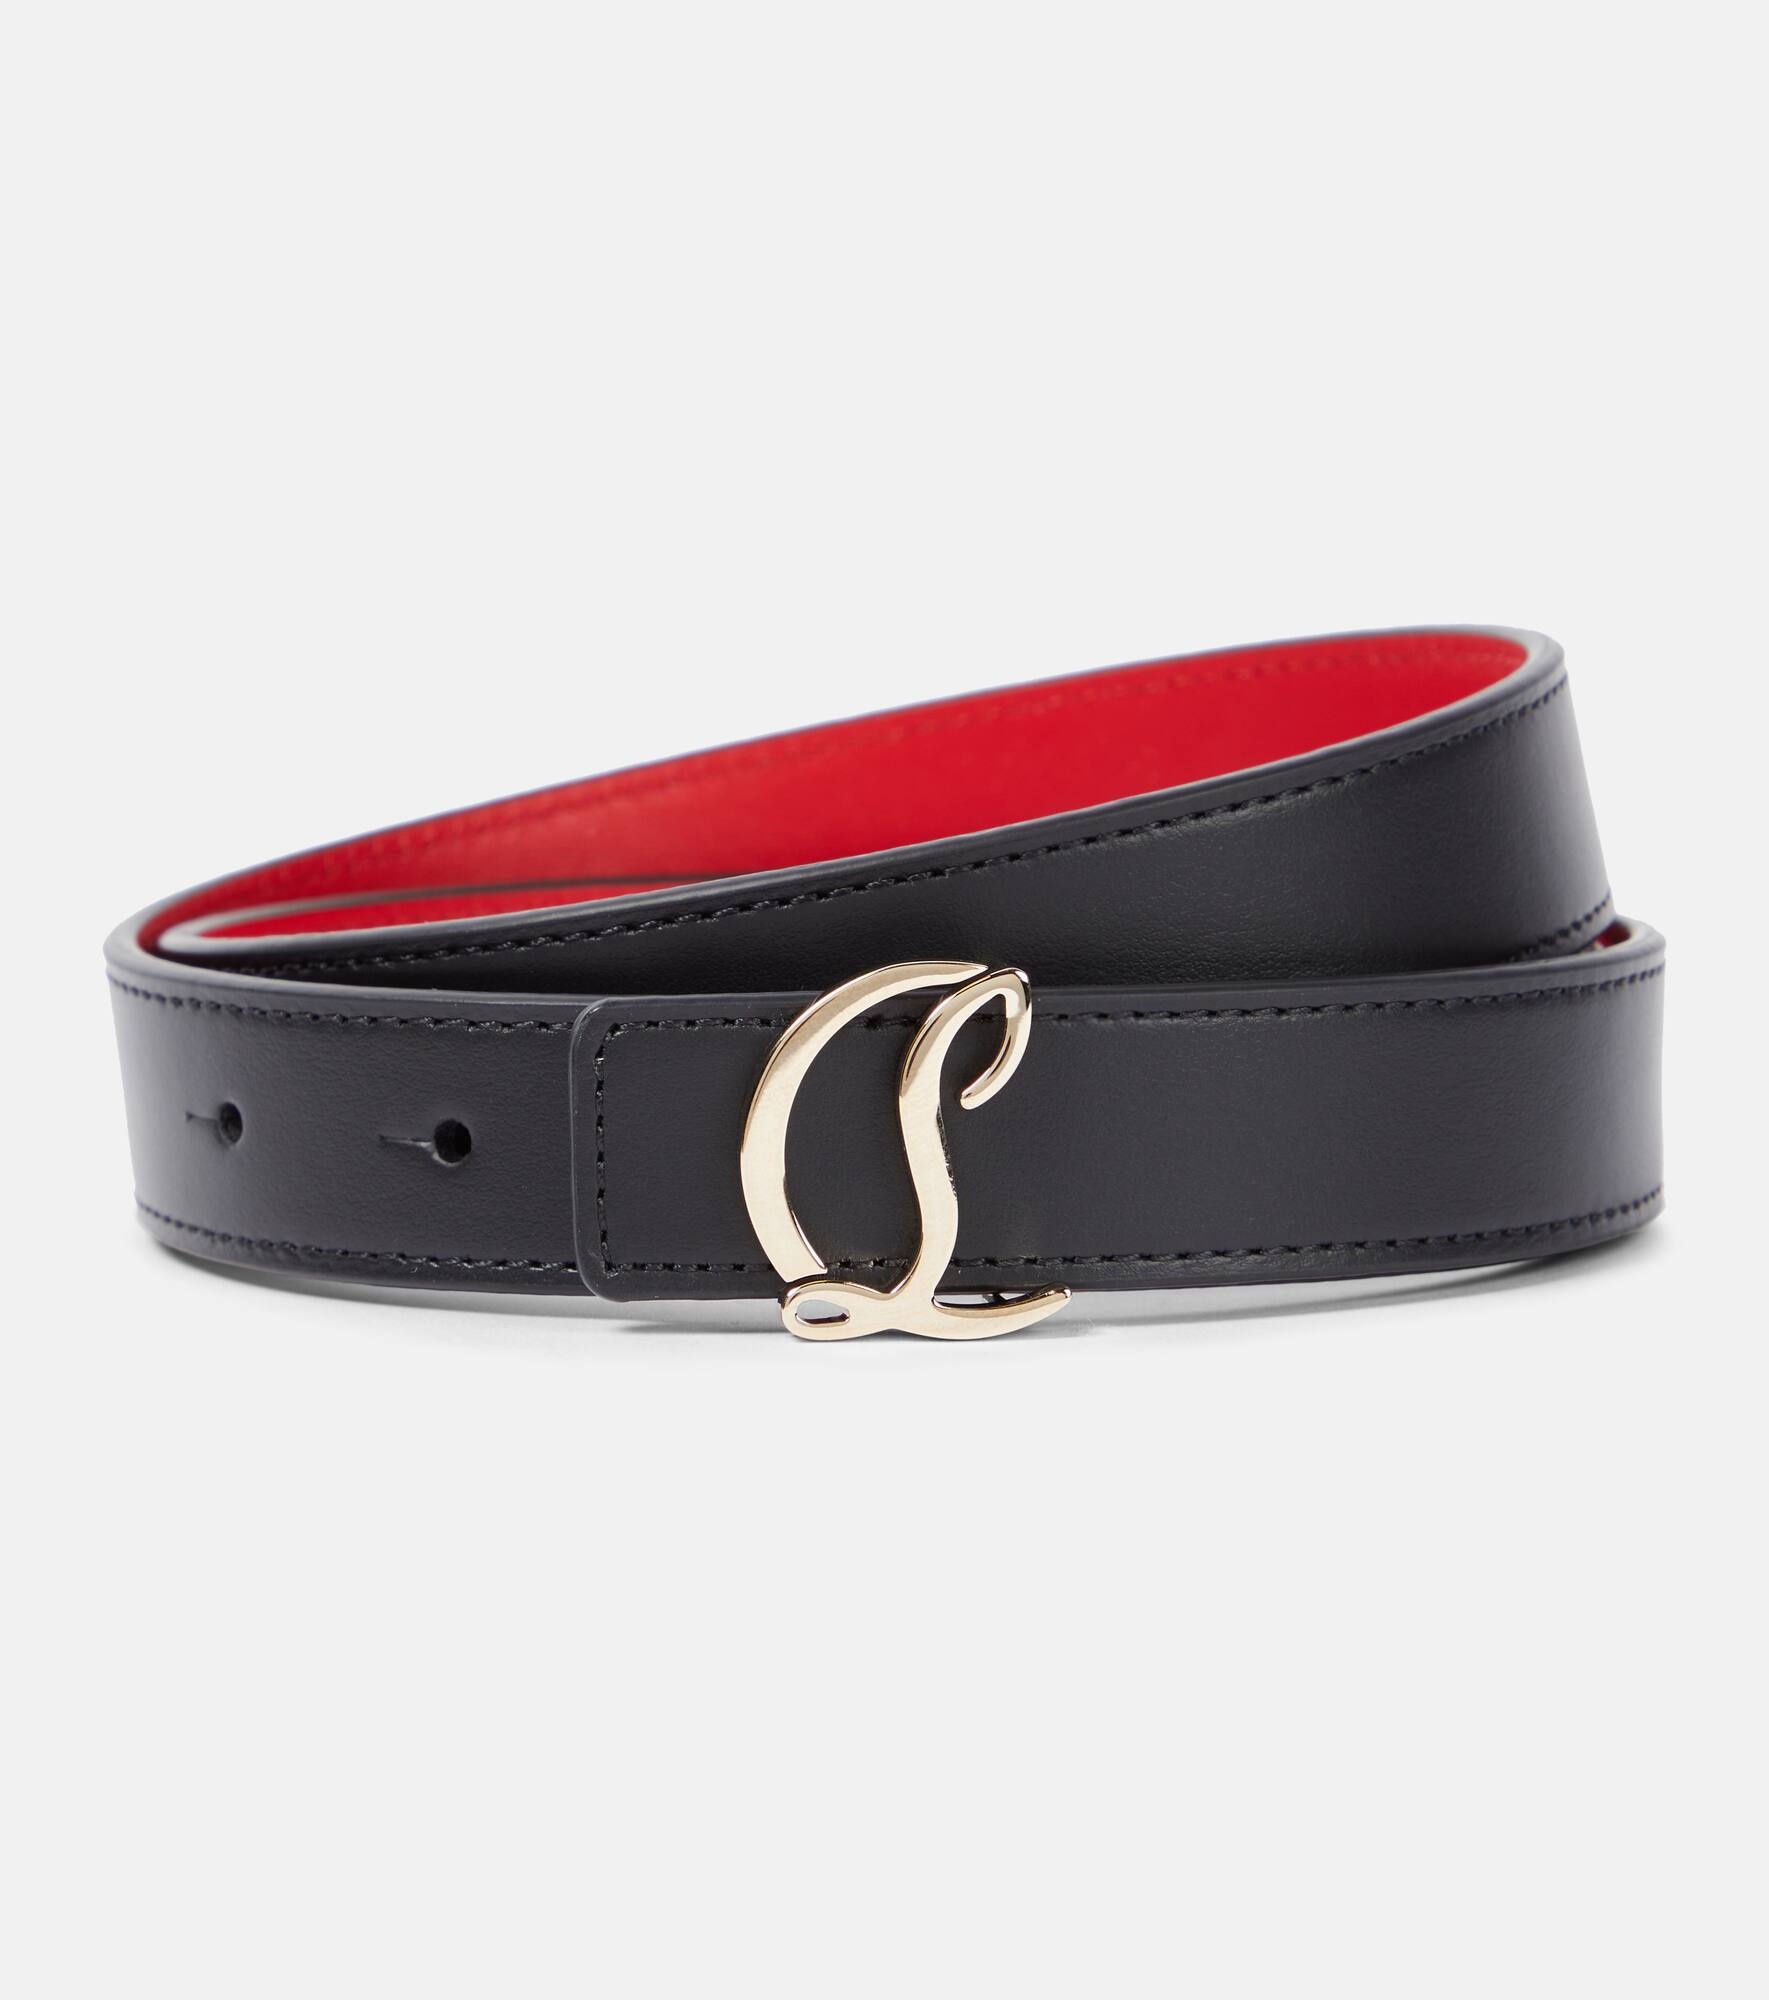 CL Logo leather belt - 1